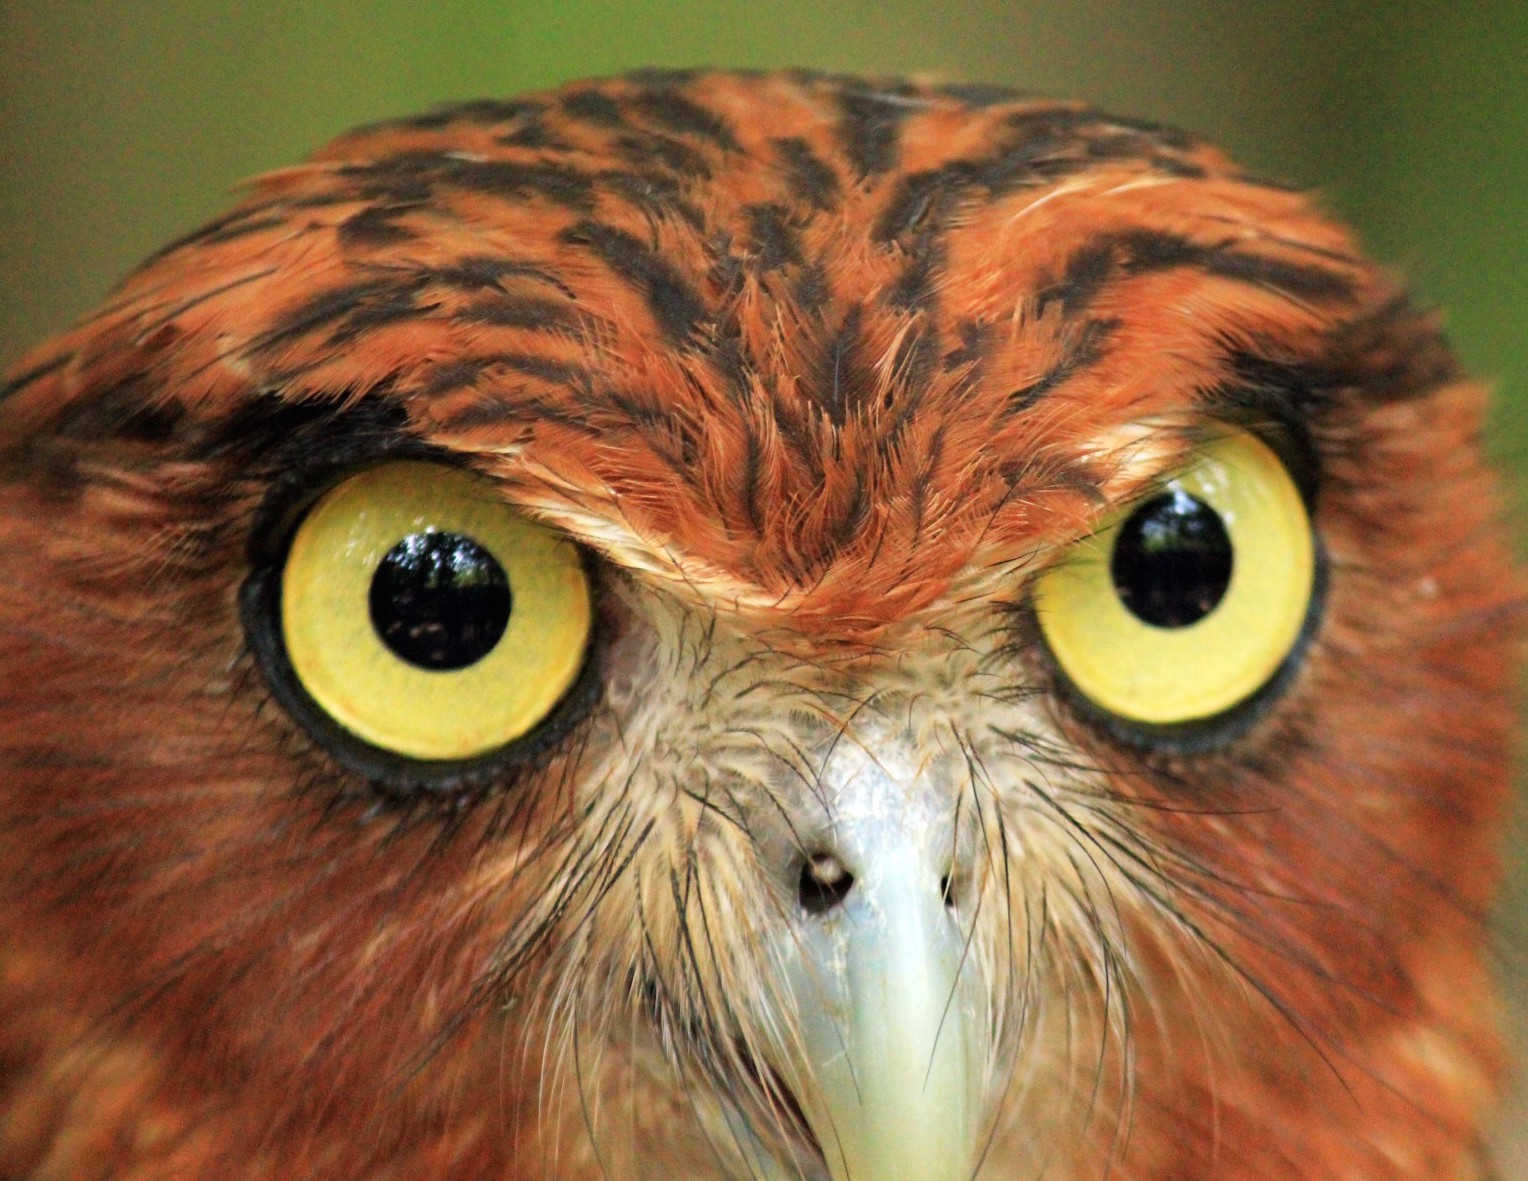 owl-eyes.jpg